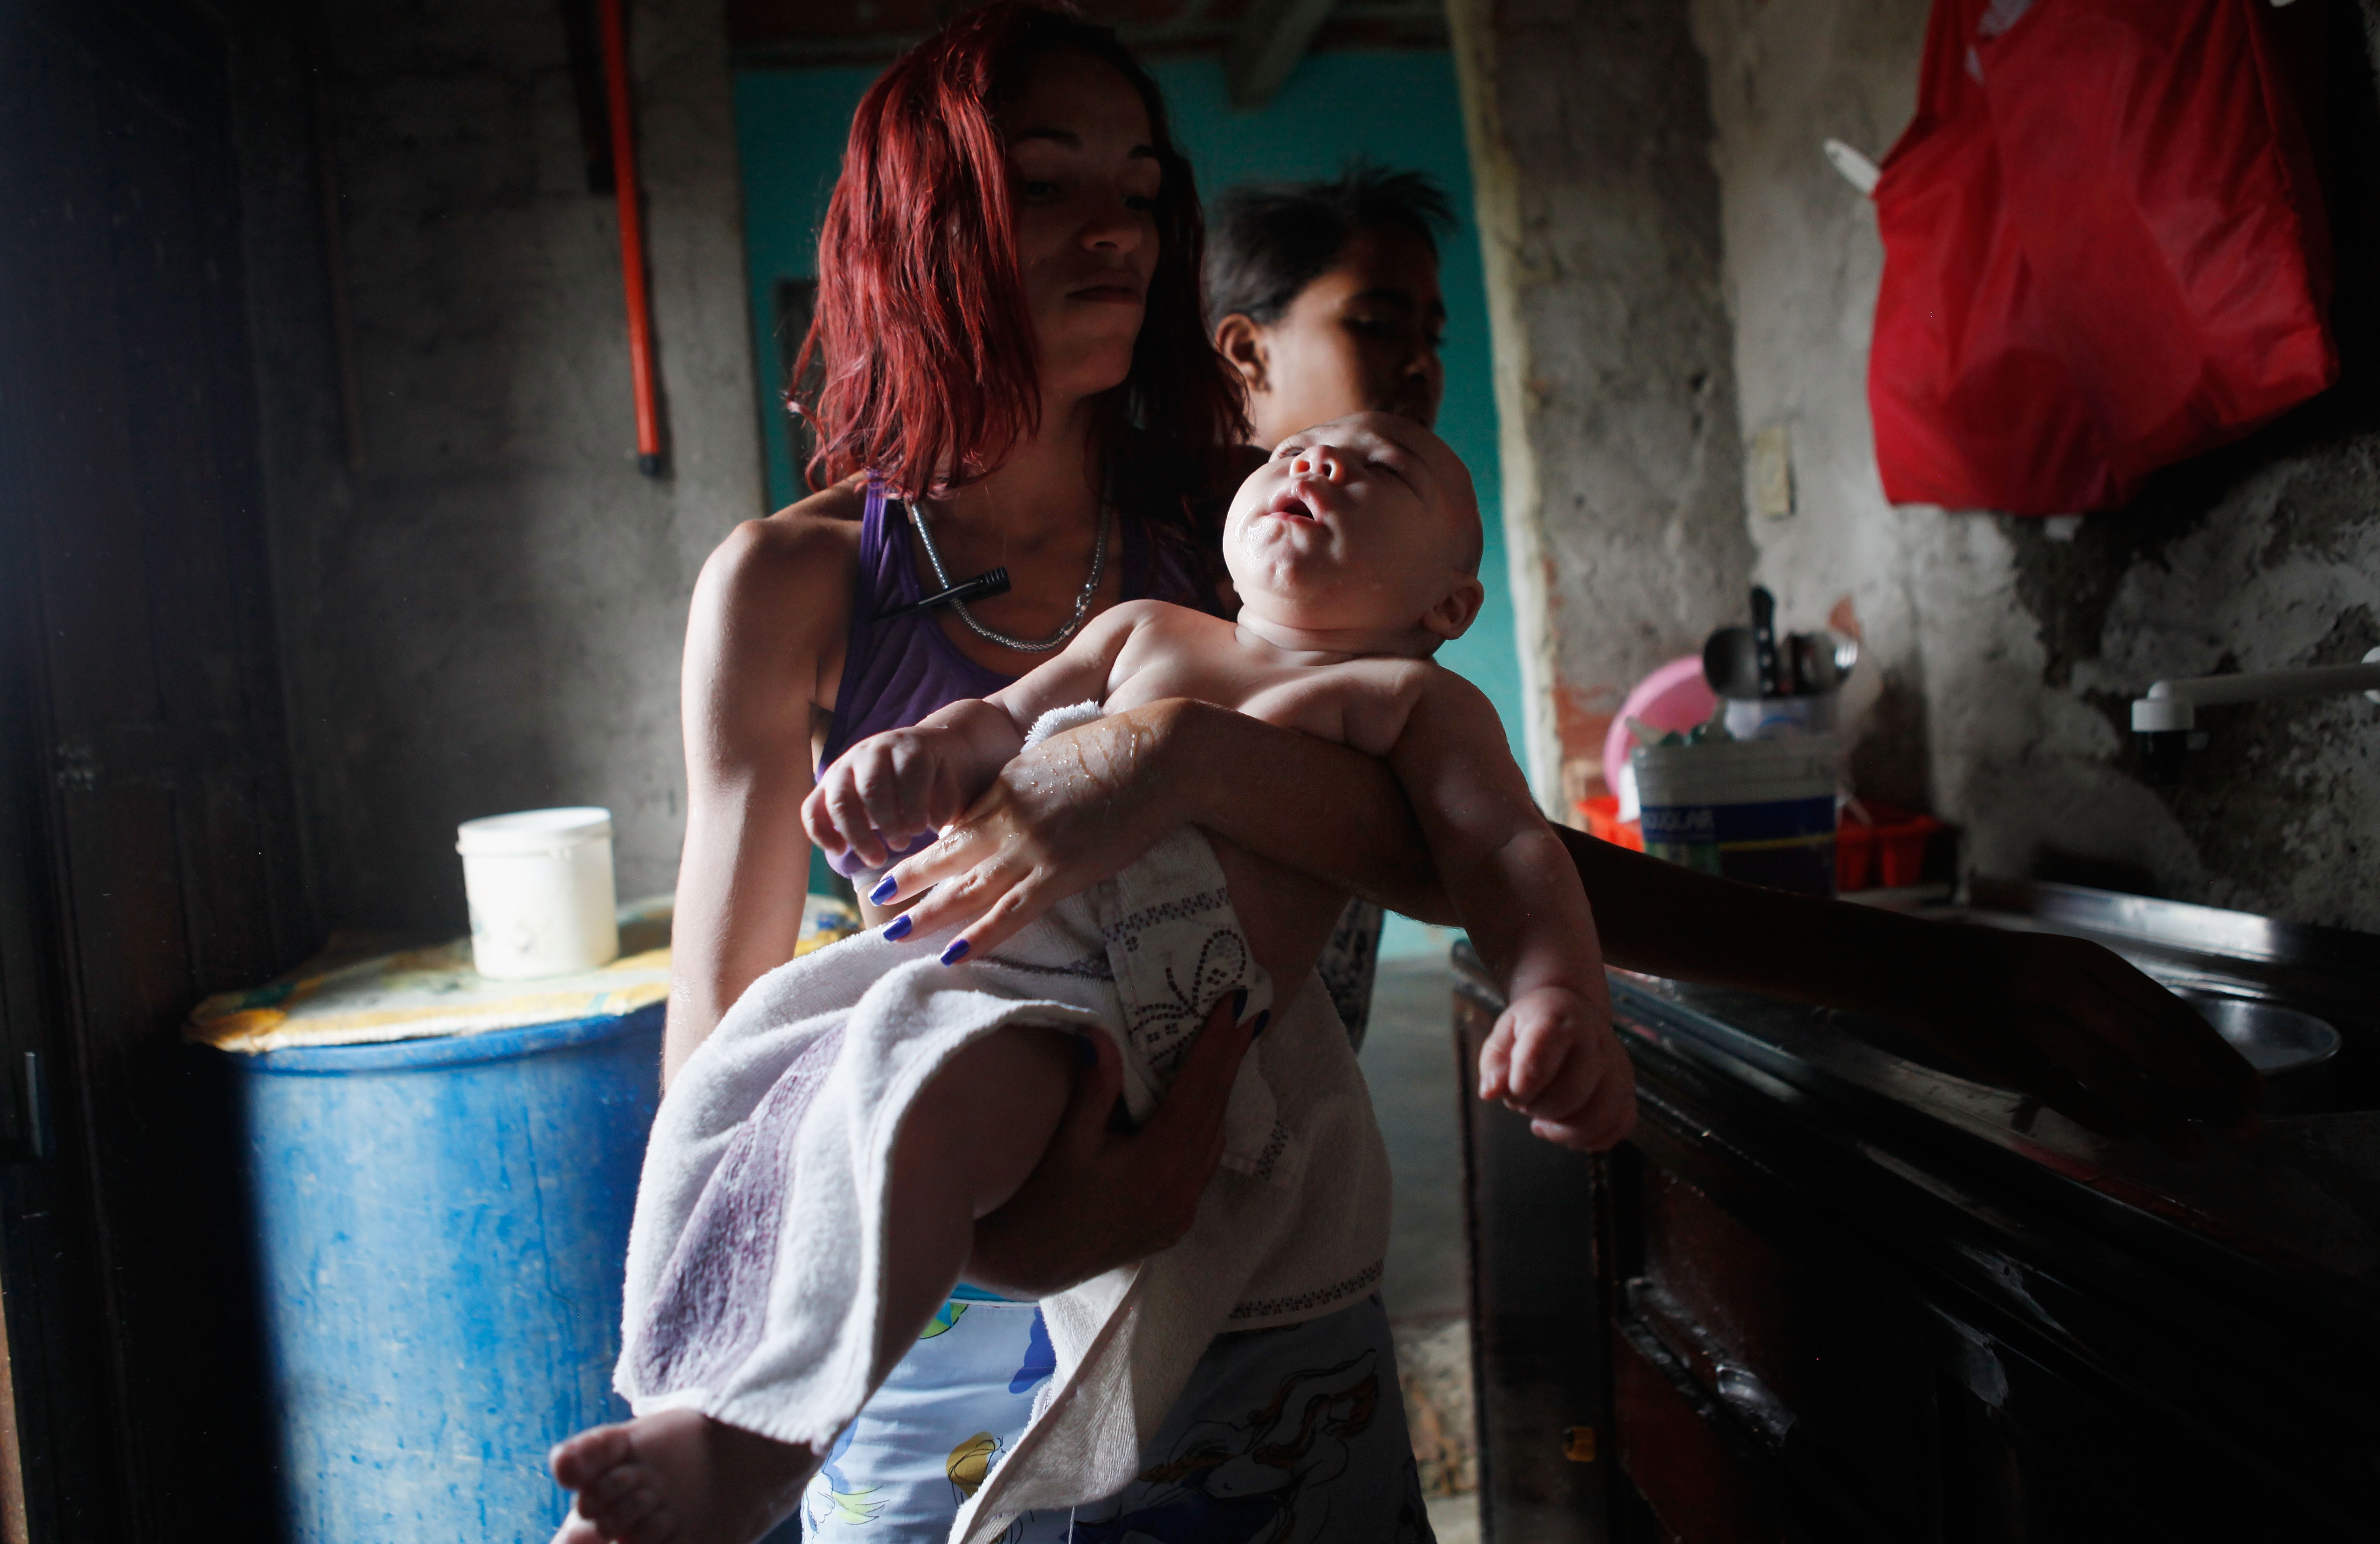 David Henrique Ferreira, que nasceu com microcefalia, é carregado por sua tia Sterfany Ferreira após um banho em 01 de fevereiro de 2016, em Recife, Pernambuco (Foto: Mario Tama/Getty Images)